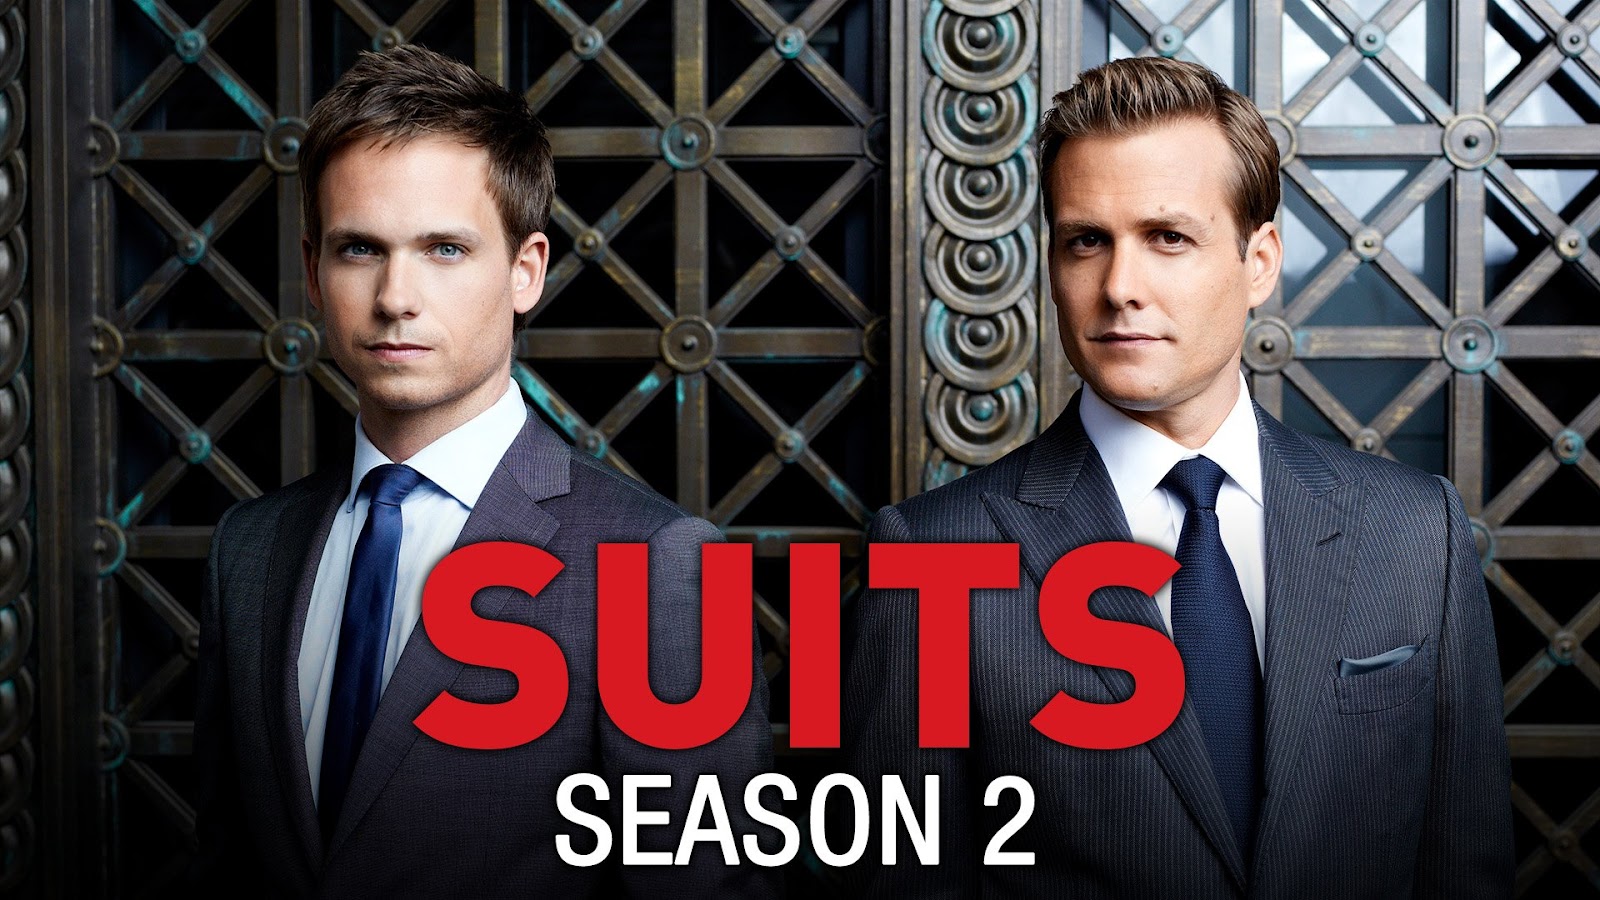 Suits Season 2 คู่หูทนายป่วน ปี 2 พากย์ไทย